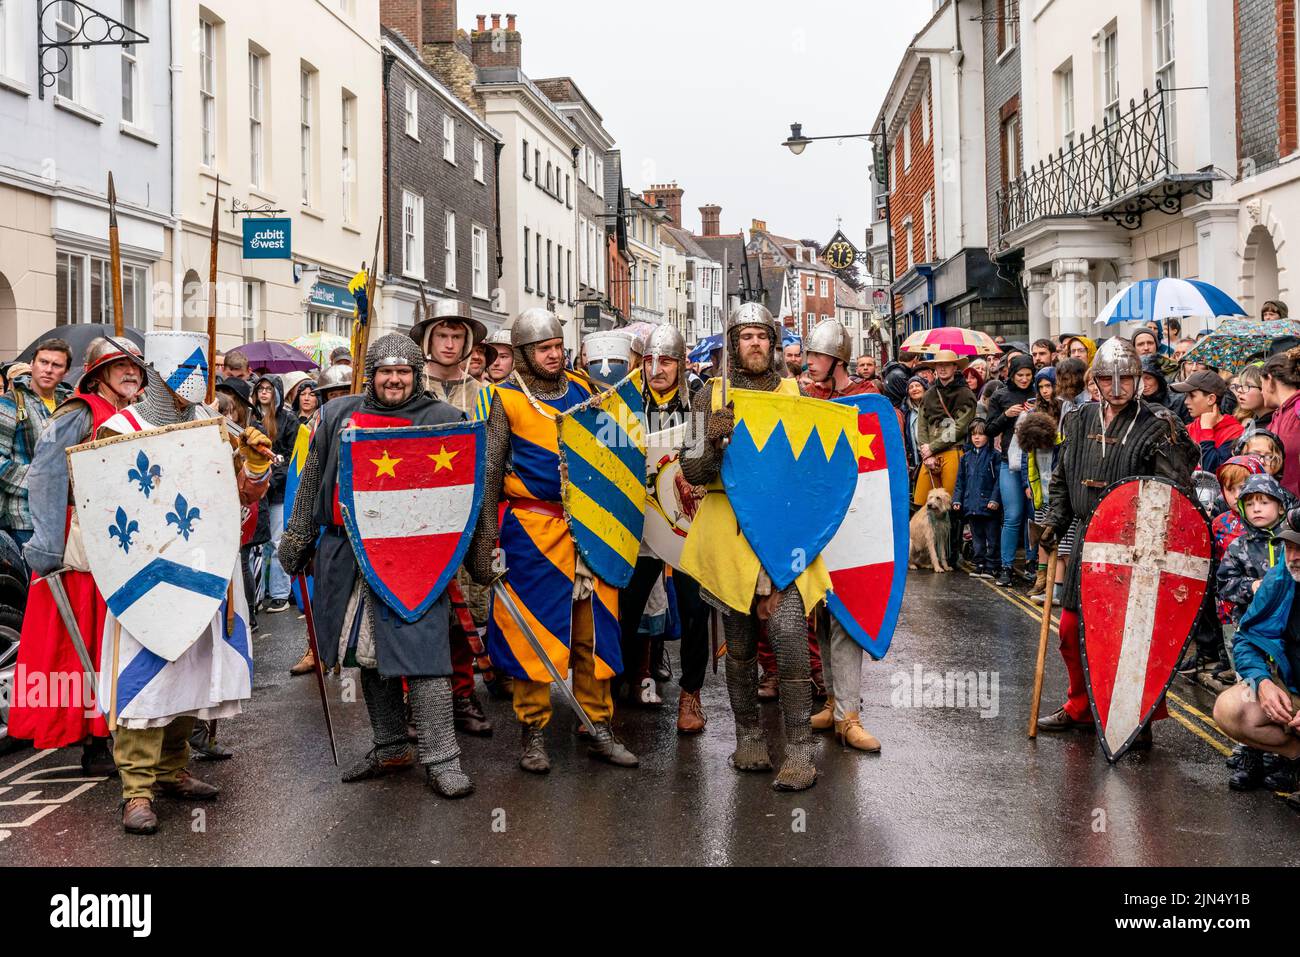 Les hommes en costume médiéval se préparent à prendre part à l'événement de reconstitution de la bataille de Lewes, à Lewes, dans l'est du Sussex, au Royaume-Uni Banque D'Images